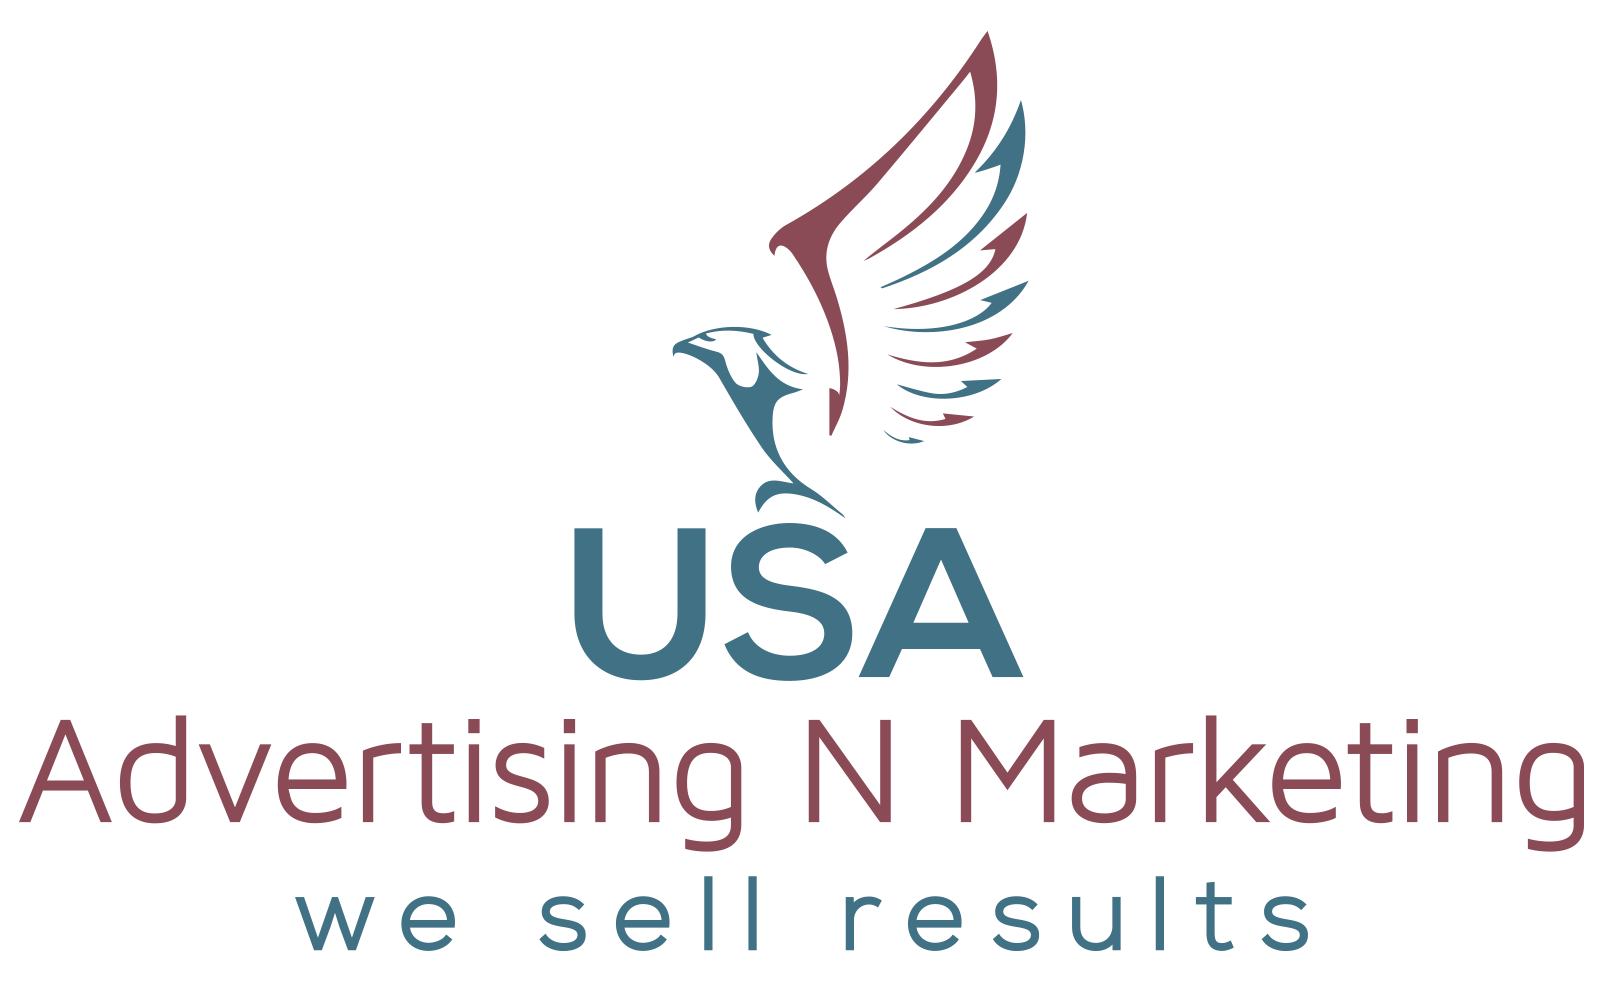 USA Advertising N Marketing